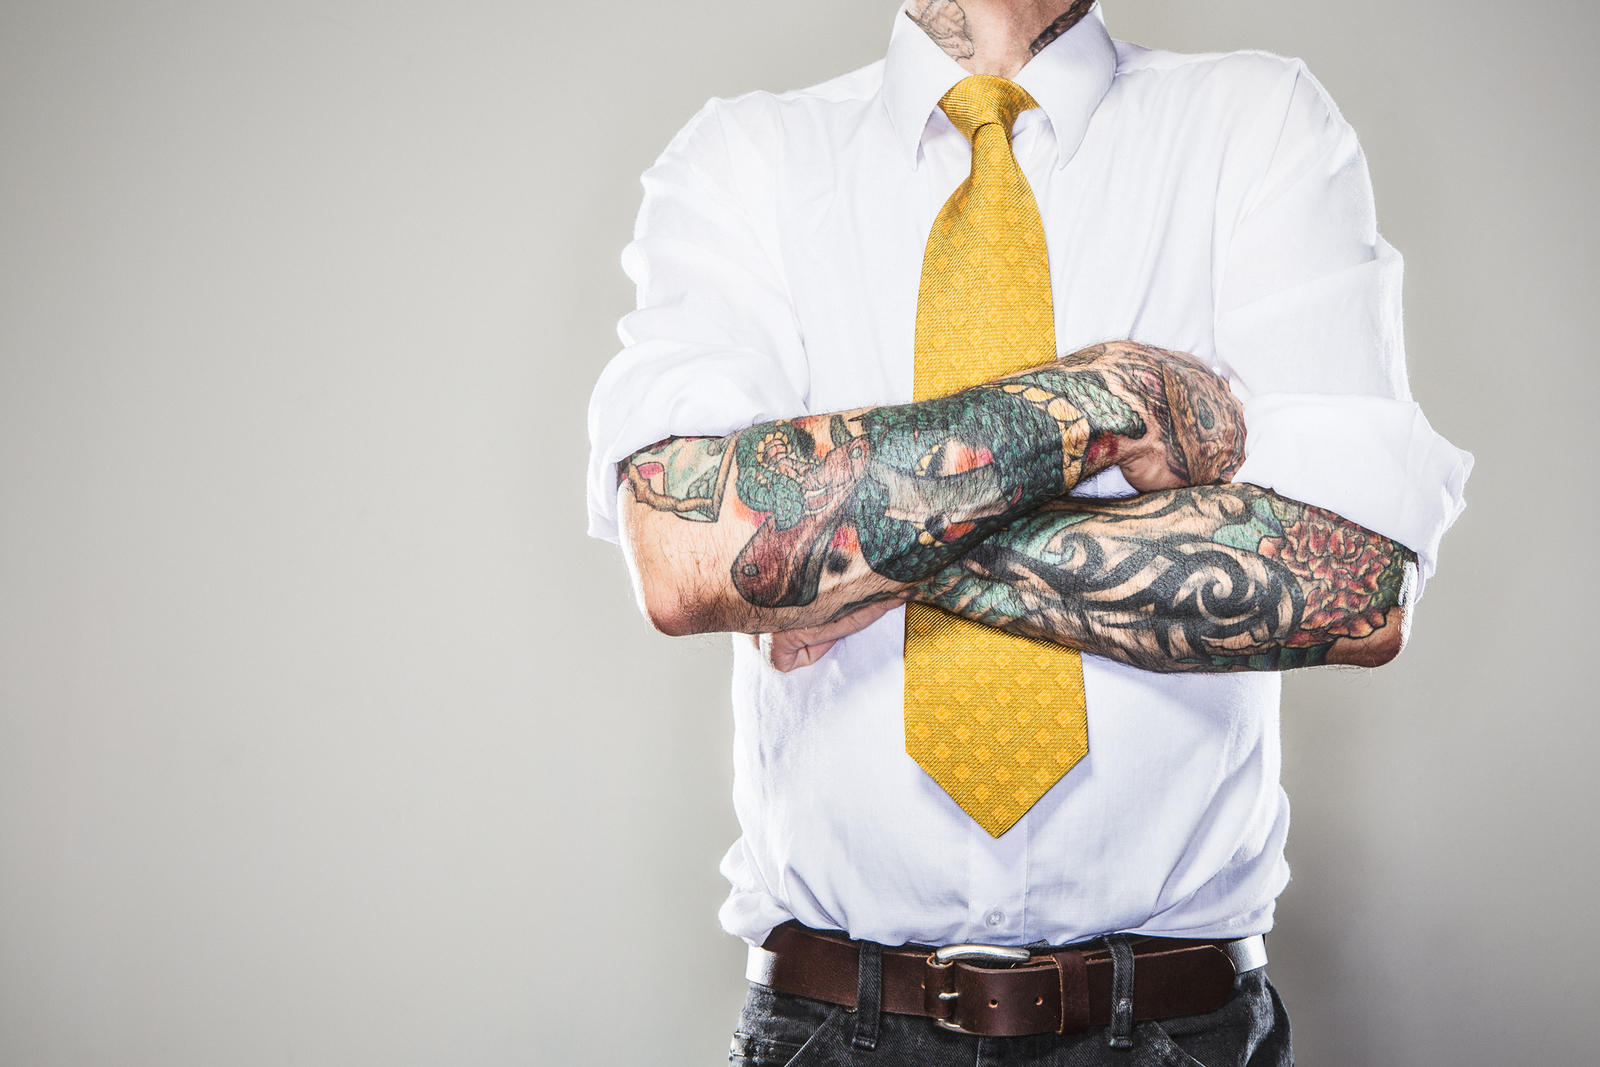 Бить или не бить: мешают ли татуировки получить хорошую работу? — Офис на webmaster-korolev.ru